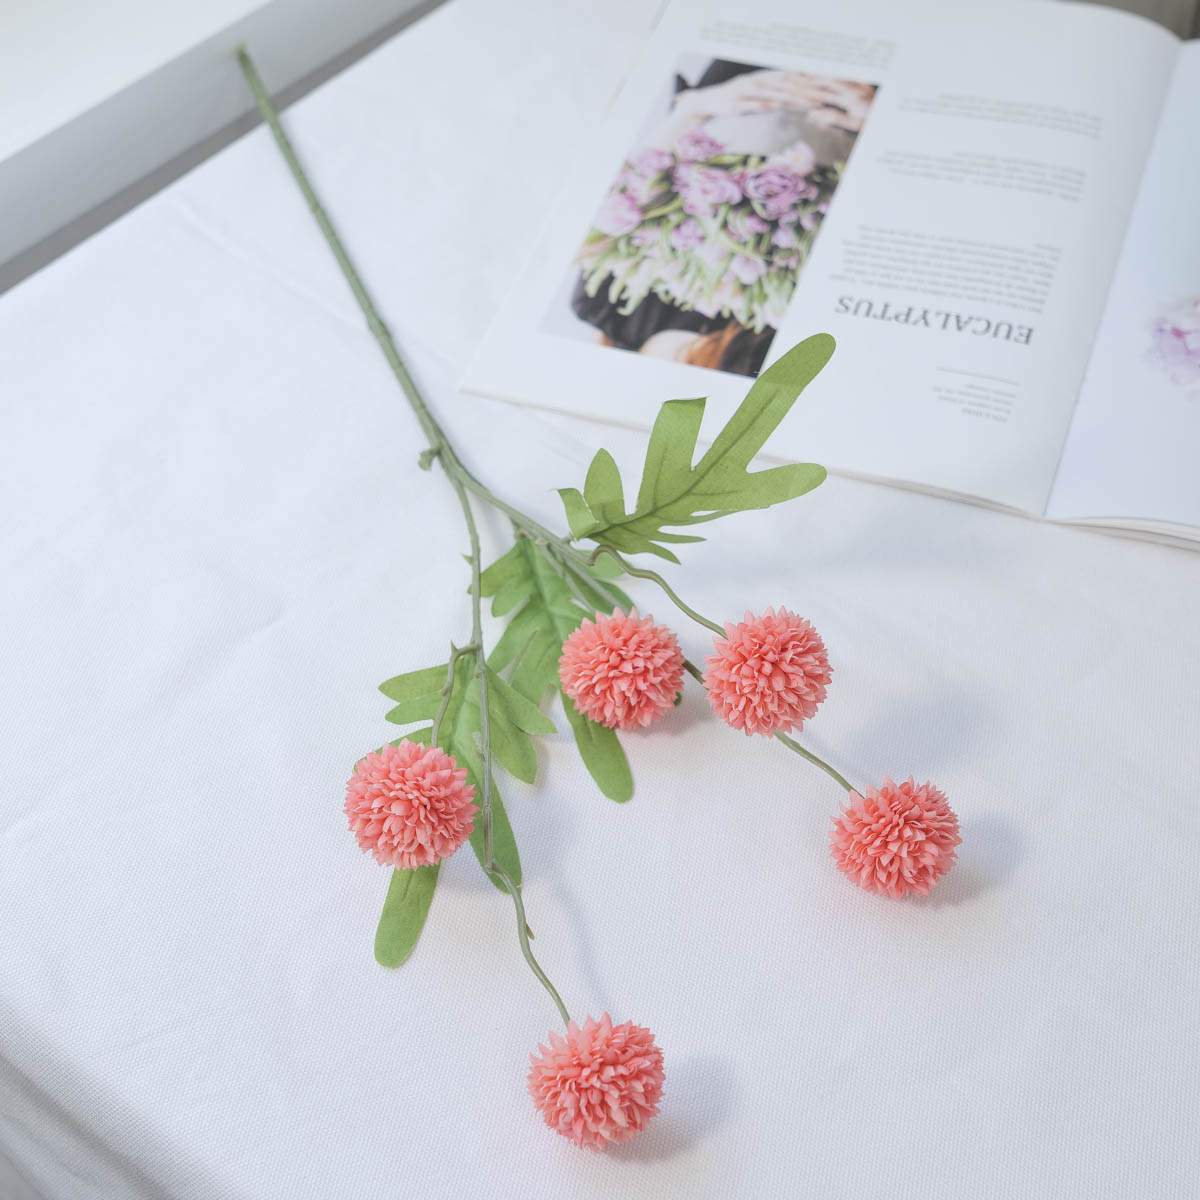 실크플라워 미니 폼폼꽃 알리움 조화 꽃 가지 52cm 진핑크 테이블에 놓은 사진